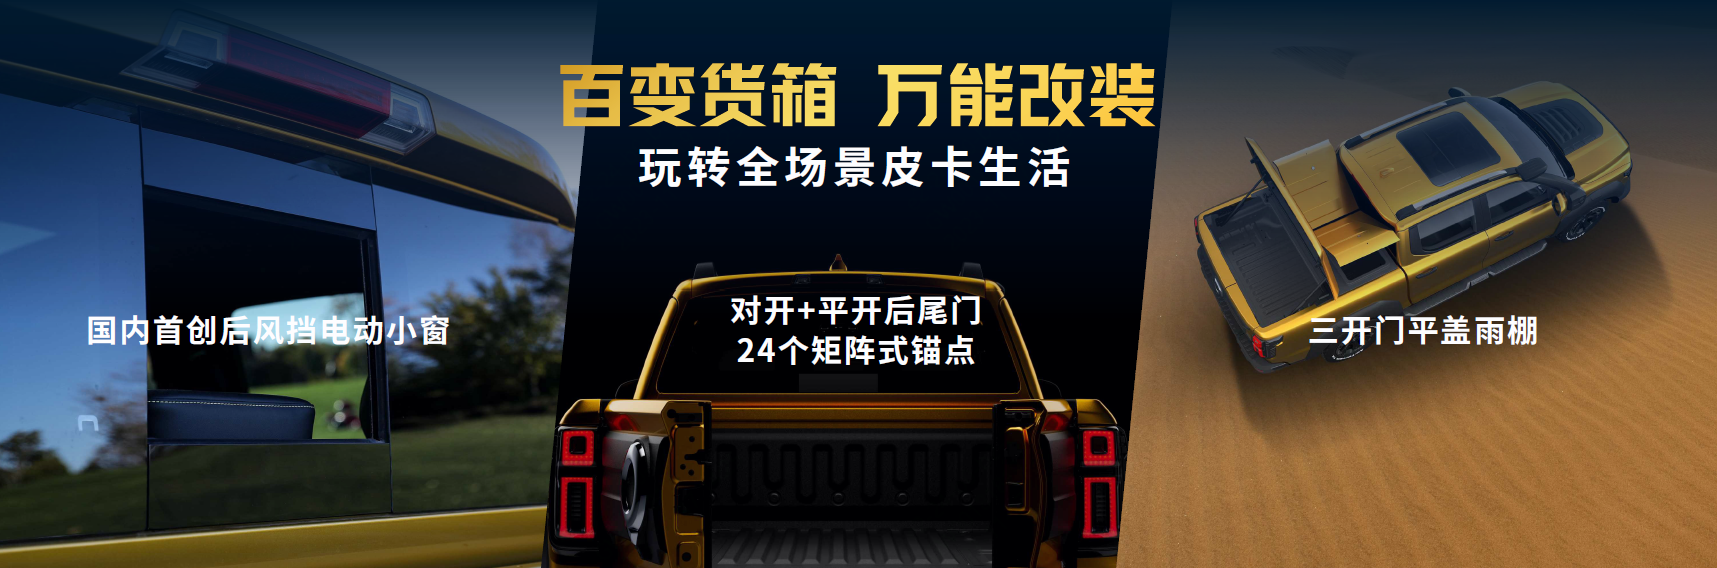 山海炮性能版27.98万元正式上市 长城炮家族强势登陆广州车展